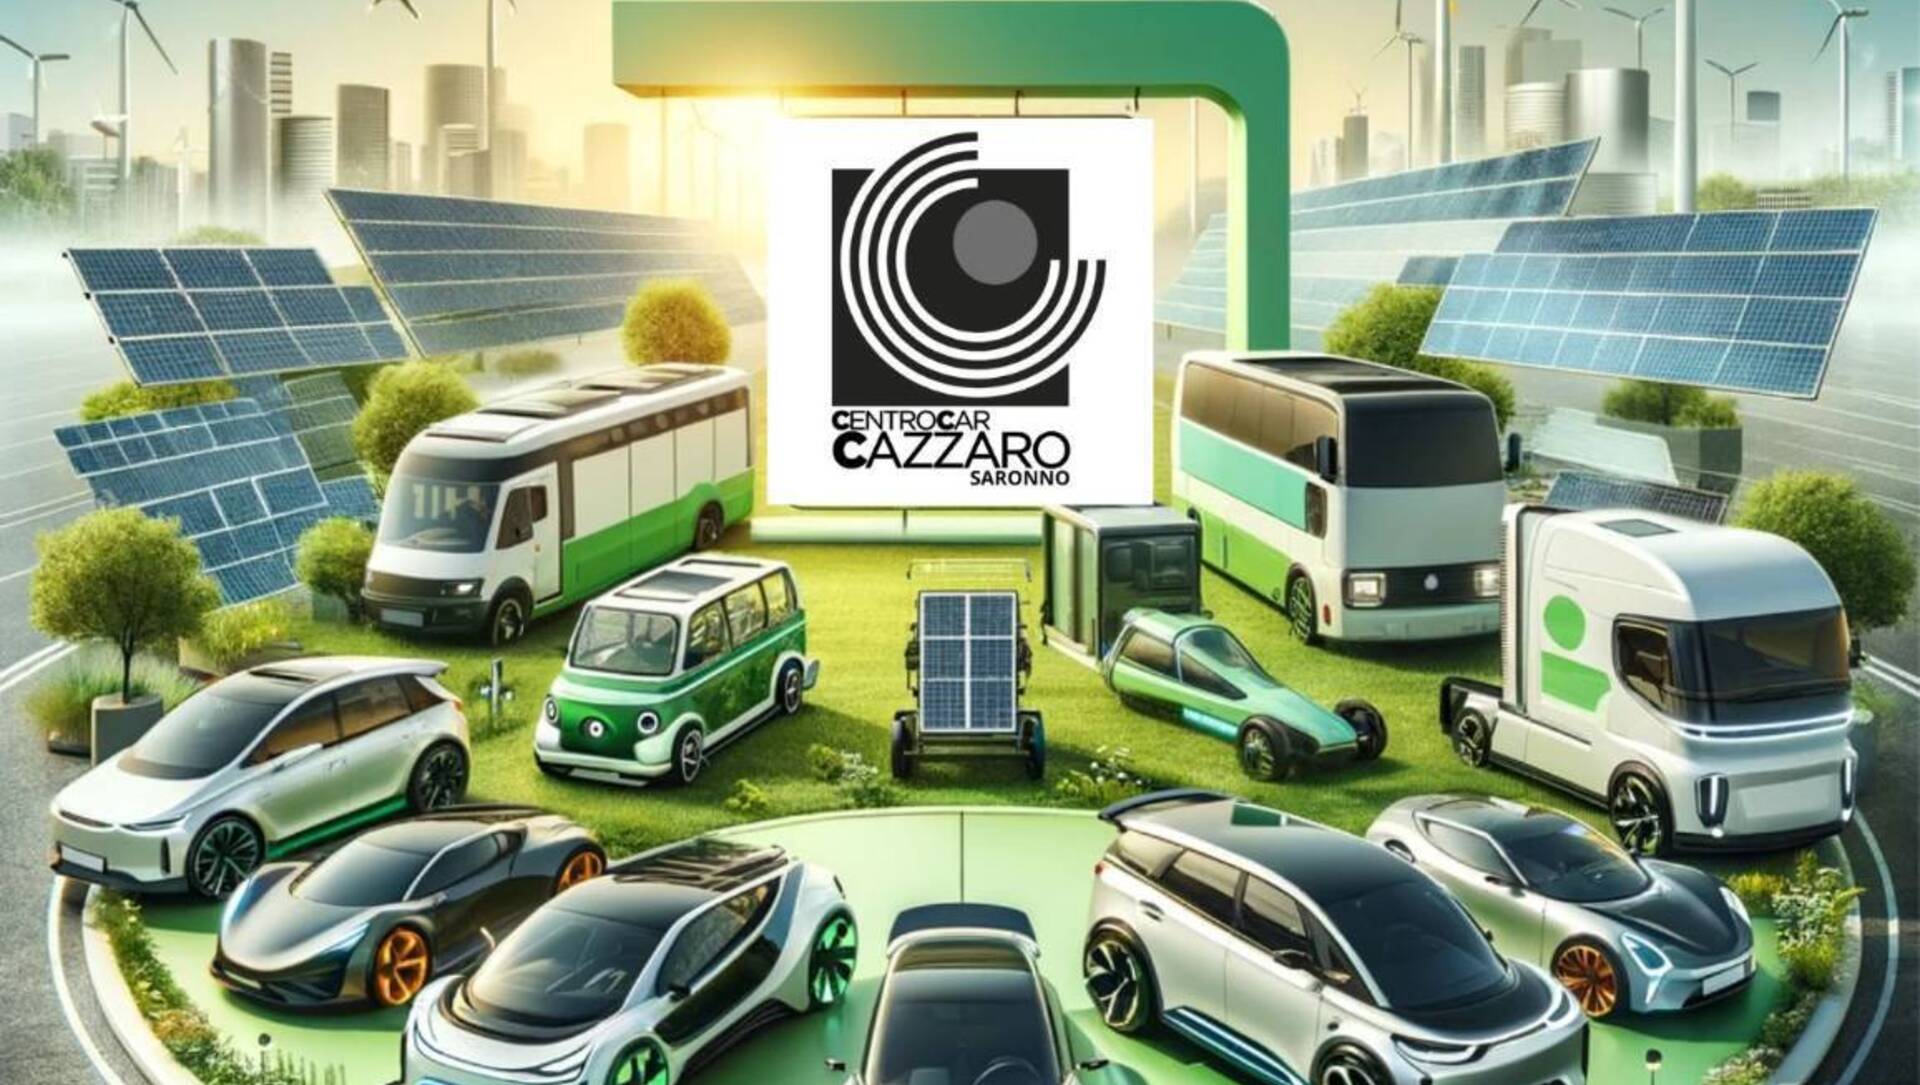 Centro Car Cazzaro e Saronno Servizi: il test drive sostenibile al centro della città